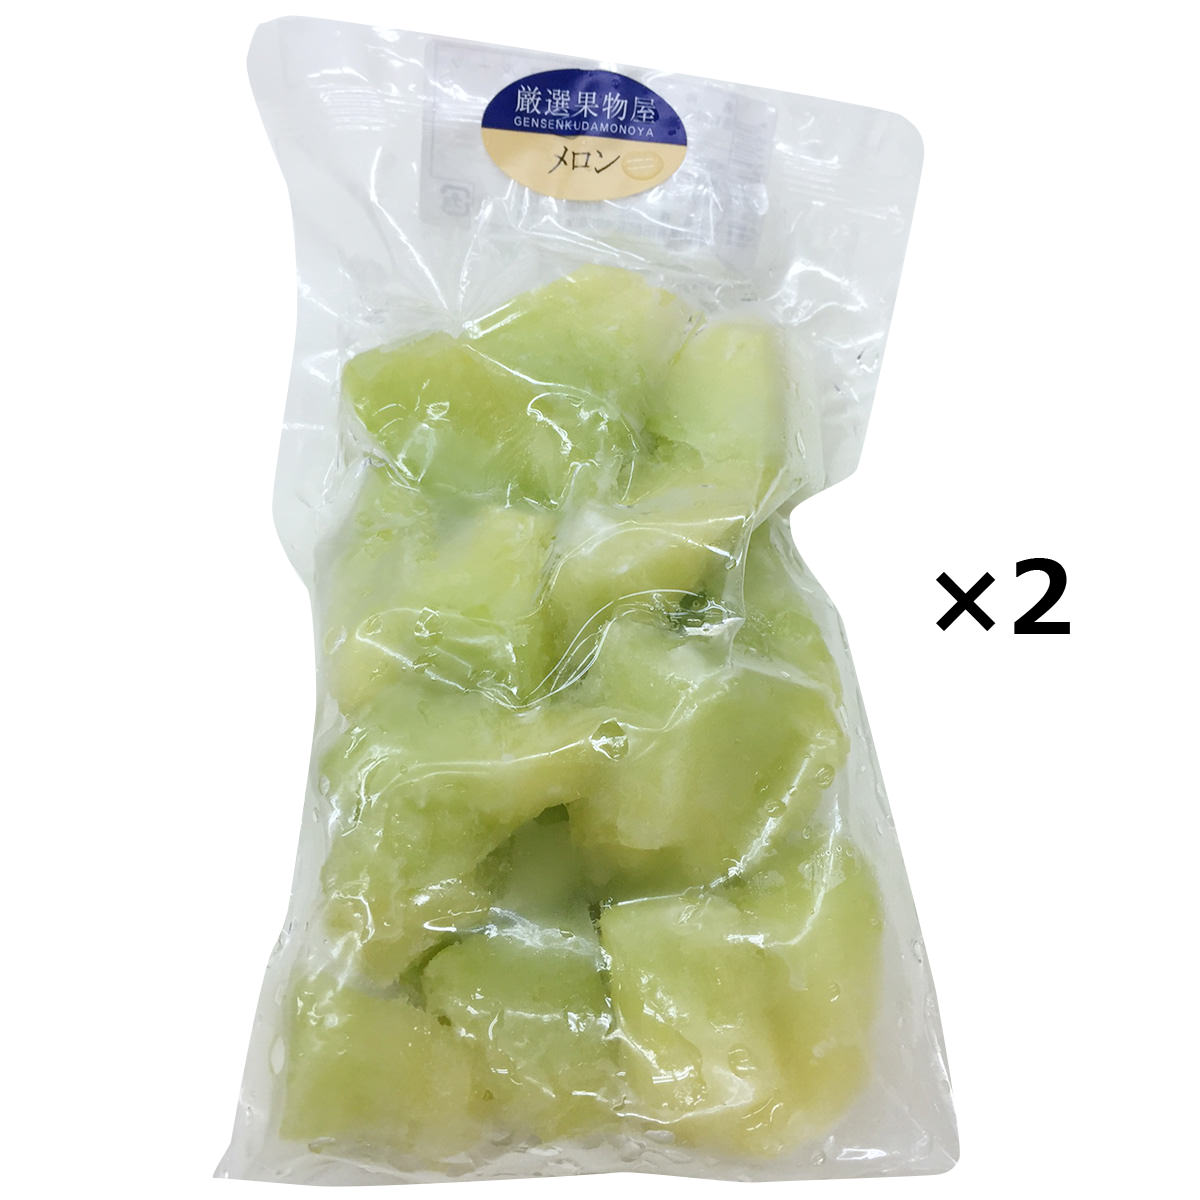 冷凍フルーツ 国産メロン 2袋 メロン 国産 冷凍 果物 カット済み 使いやすい カットフルーツ 一口サイズ デザート 冷凍カットフルーツ 国産フルーツ スムージー デトックスウォーター NORUCA